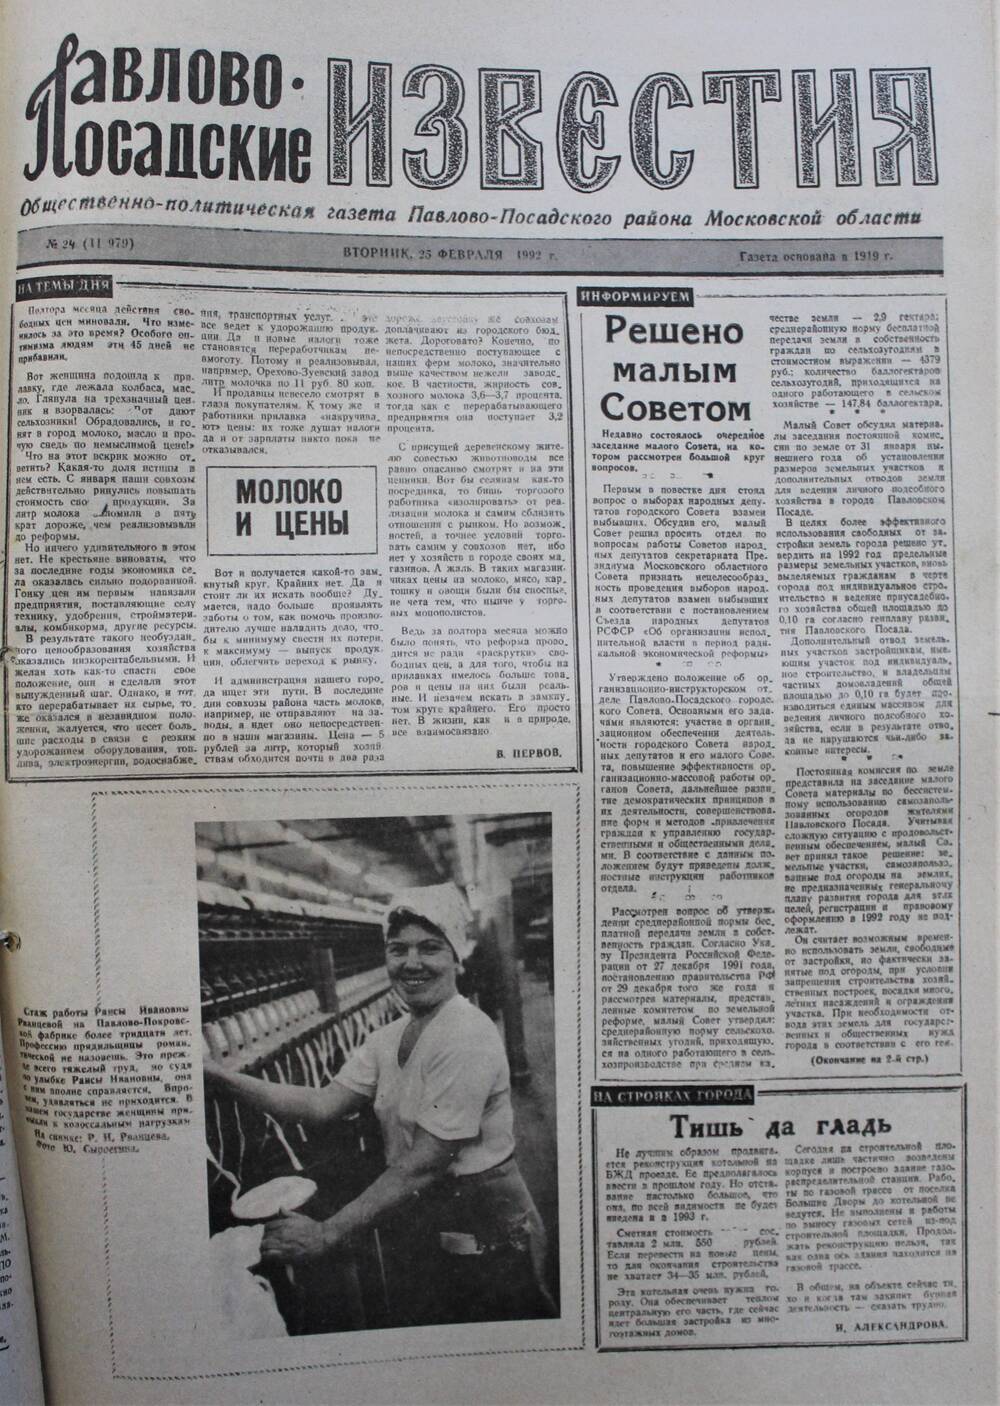 Газета Павлово-Посадские известия № 24 (11979)  от 25 февраля 1992 г.